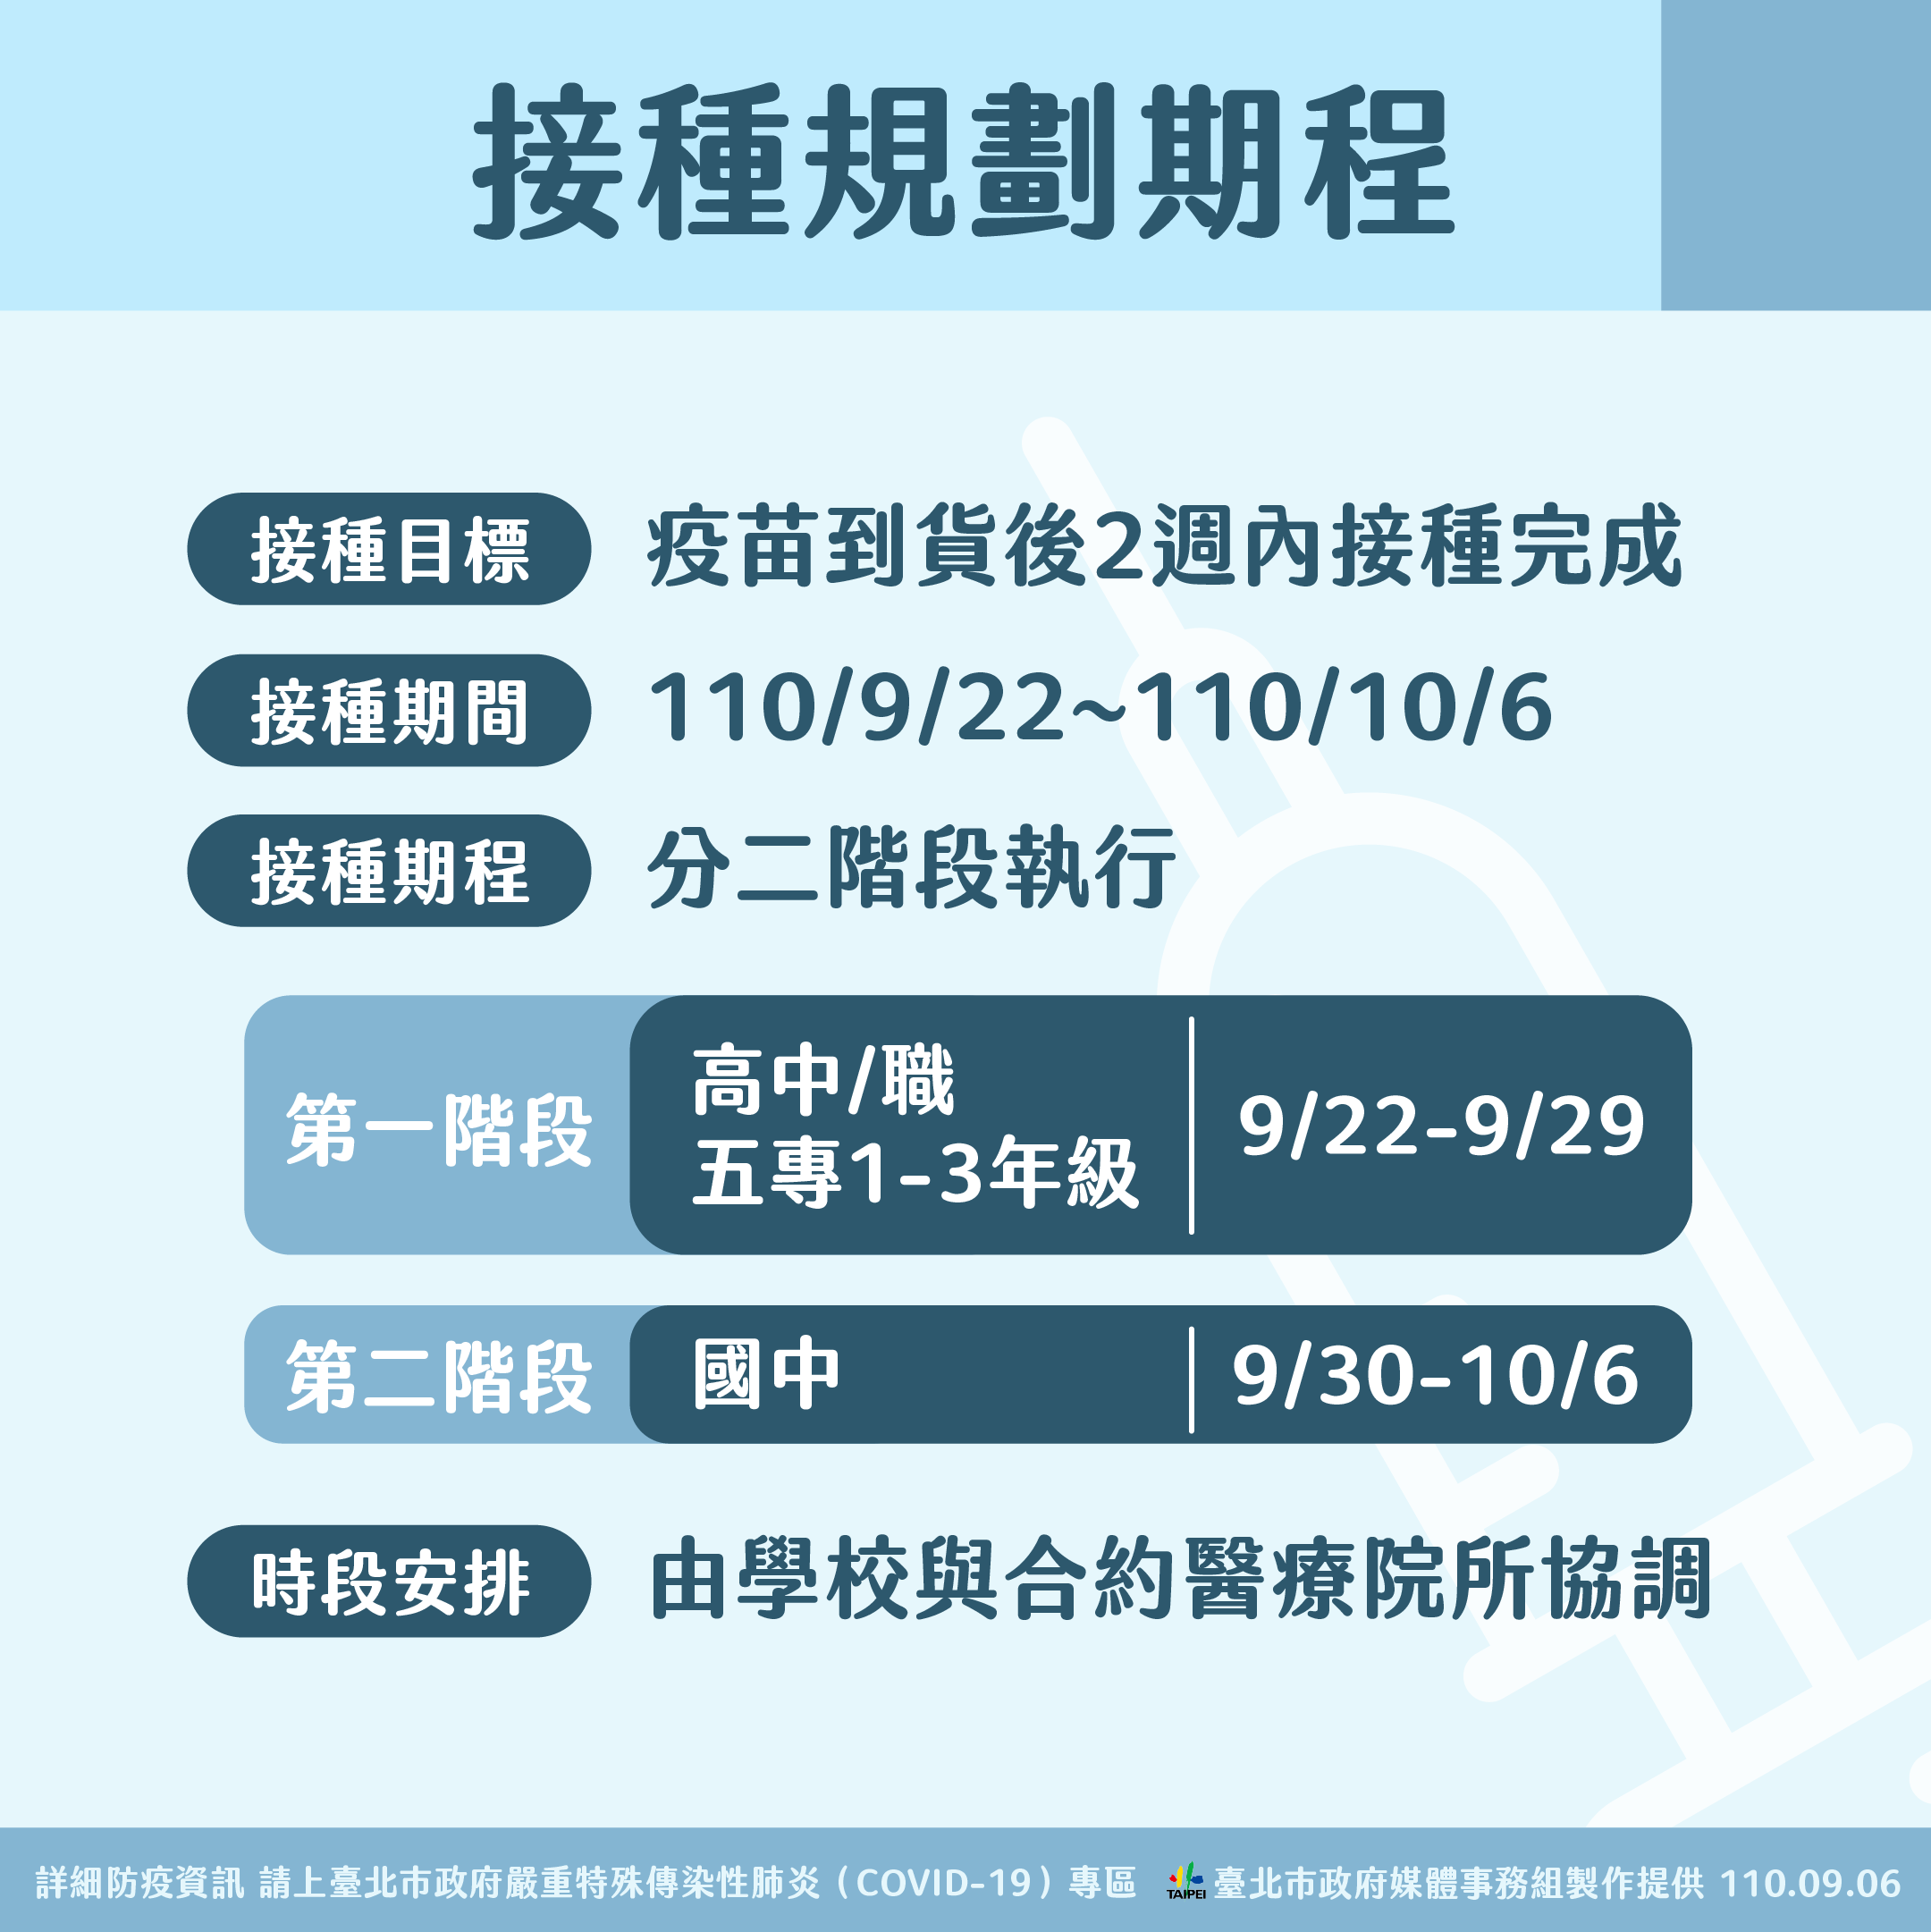 臺北市政府衛生局 活動訊息 北市校園疫苗接種計畫及接種規劃期程